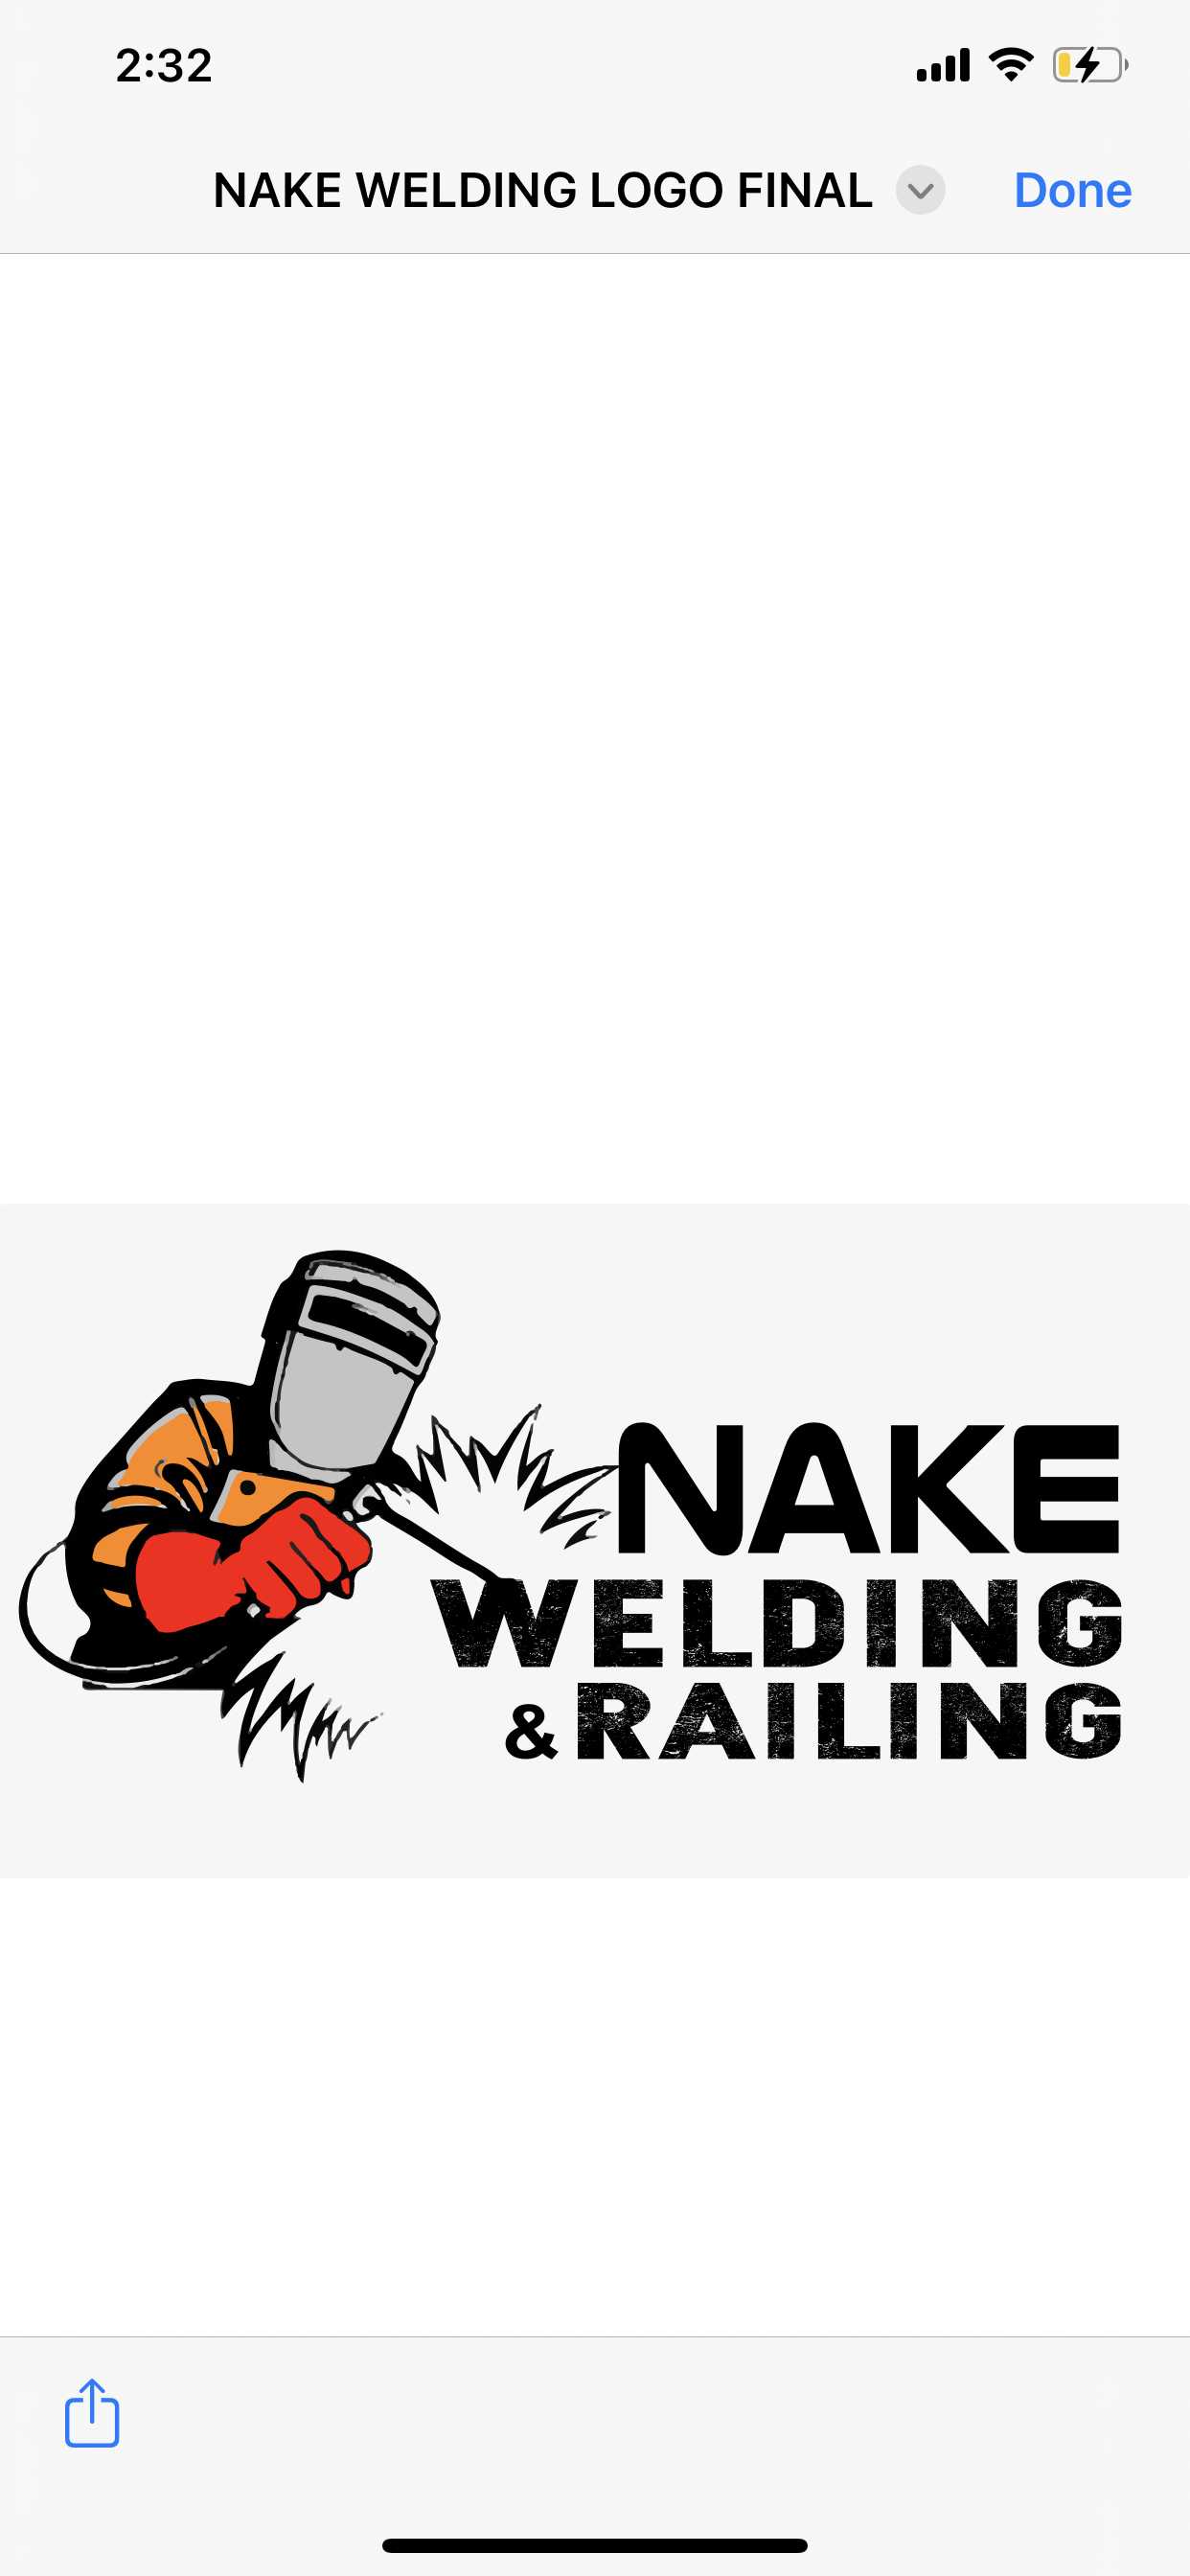 Nake Welding and Railing, LLC Logo